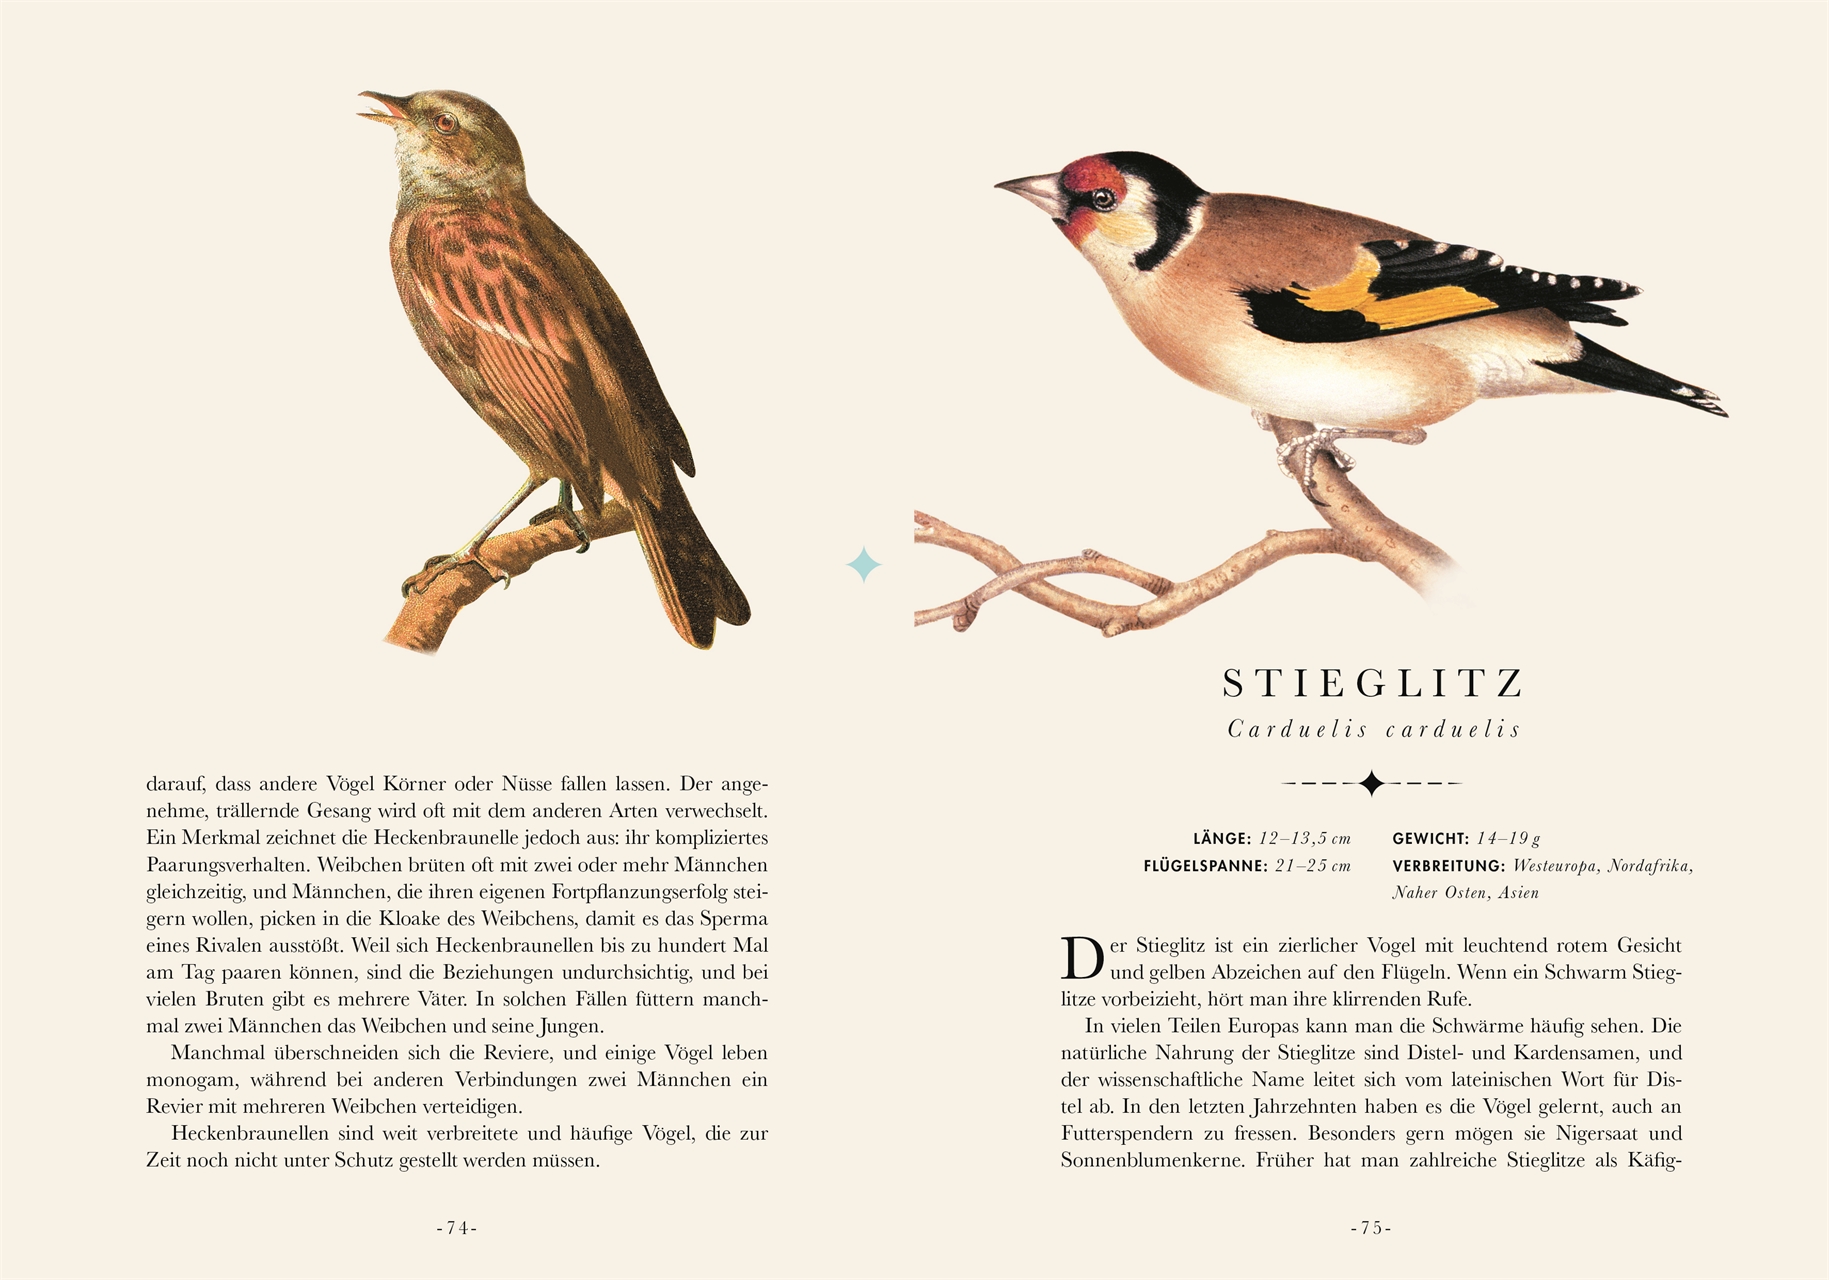 Naturelove. Die 50 schönsten Vögel der Welt